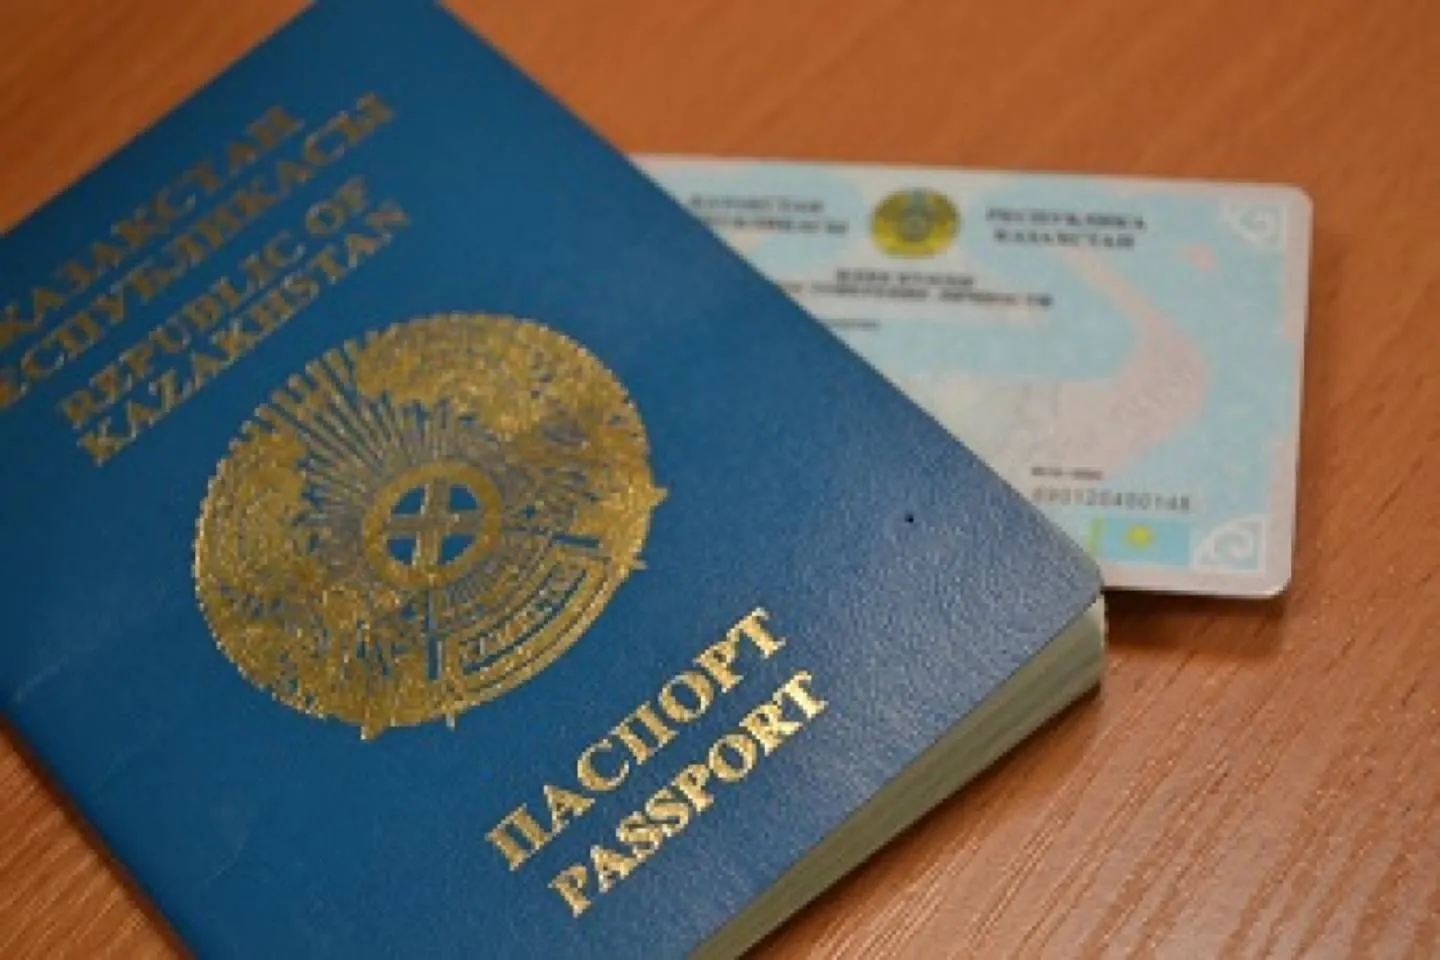 Новости Казахстана / Общество в Казахстане / Жительница области Абай впервые получила удостоверение личности в 62 года